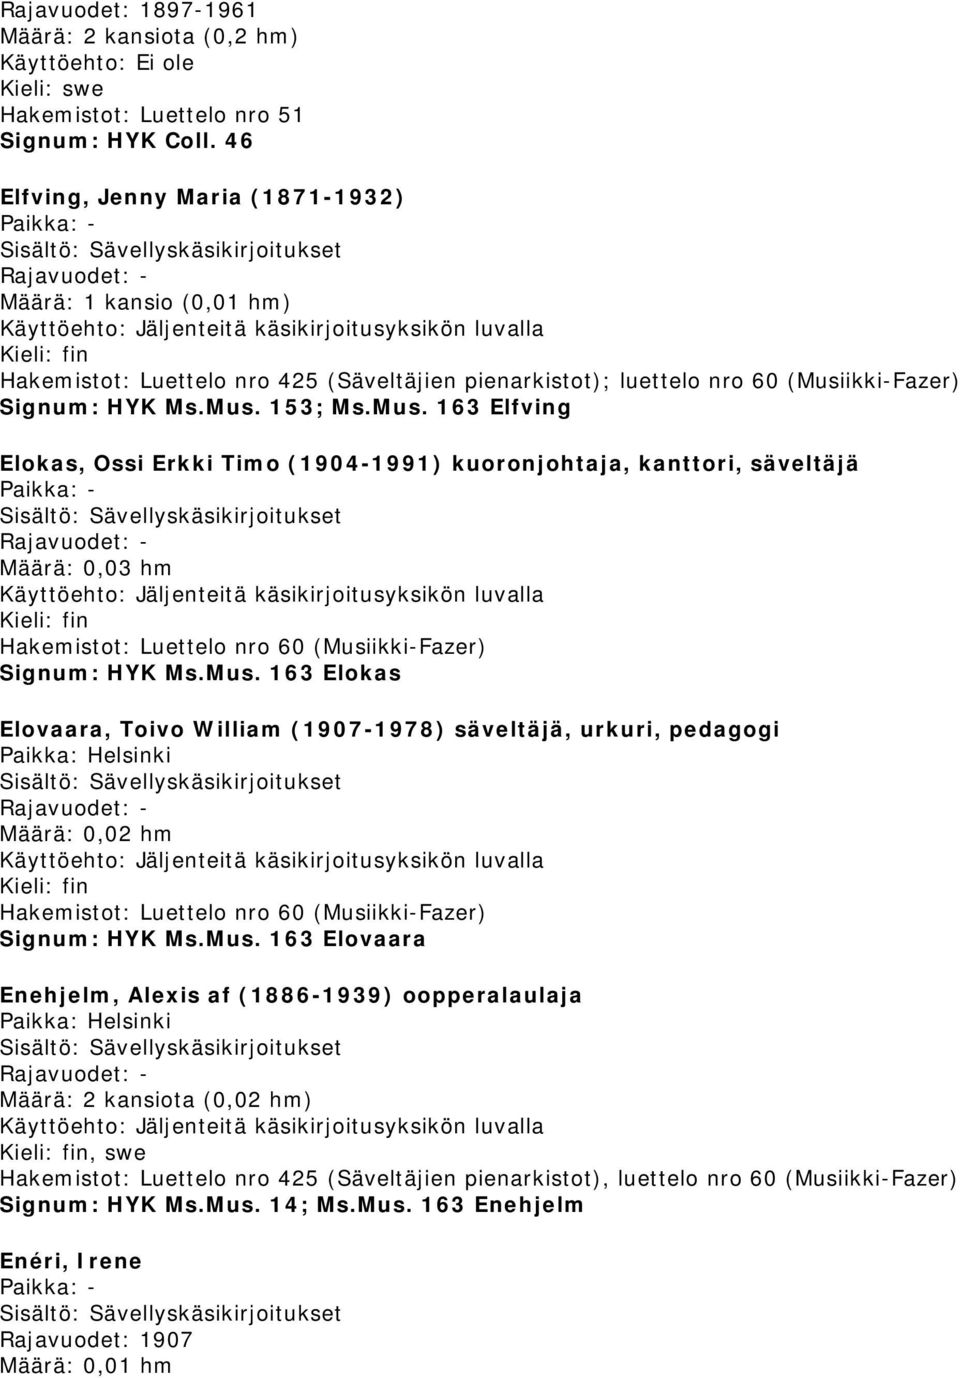 ikki-Fazer) Signum: HYK Ms.Mus. 153; Ms.Mus. 163 Elfving Elokas, Ossi Erkki Timo (1904-1991) kuoronjohtaja, kanttori, säveltäjä Määrä: 0,03 hm Signum: HYK Ms.